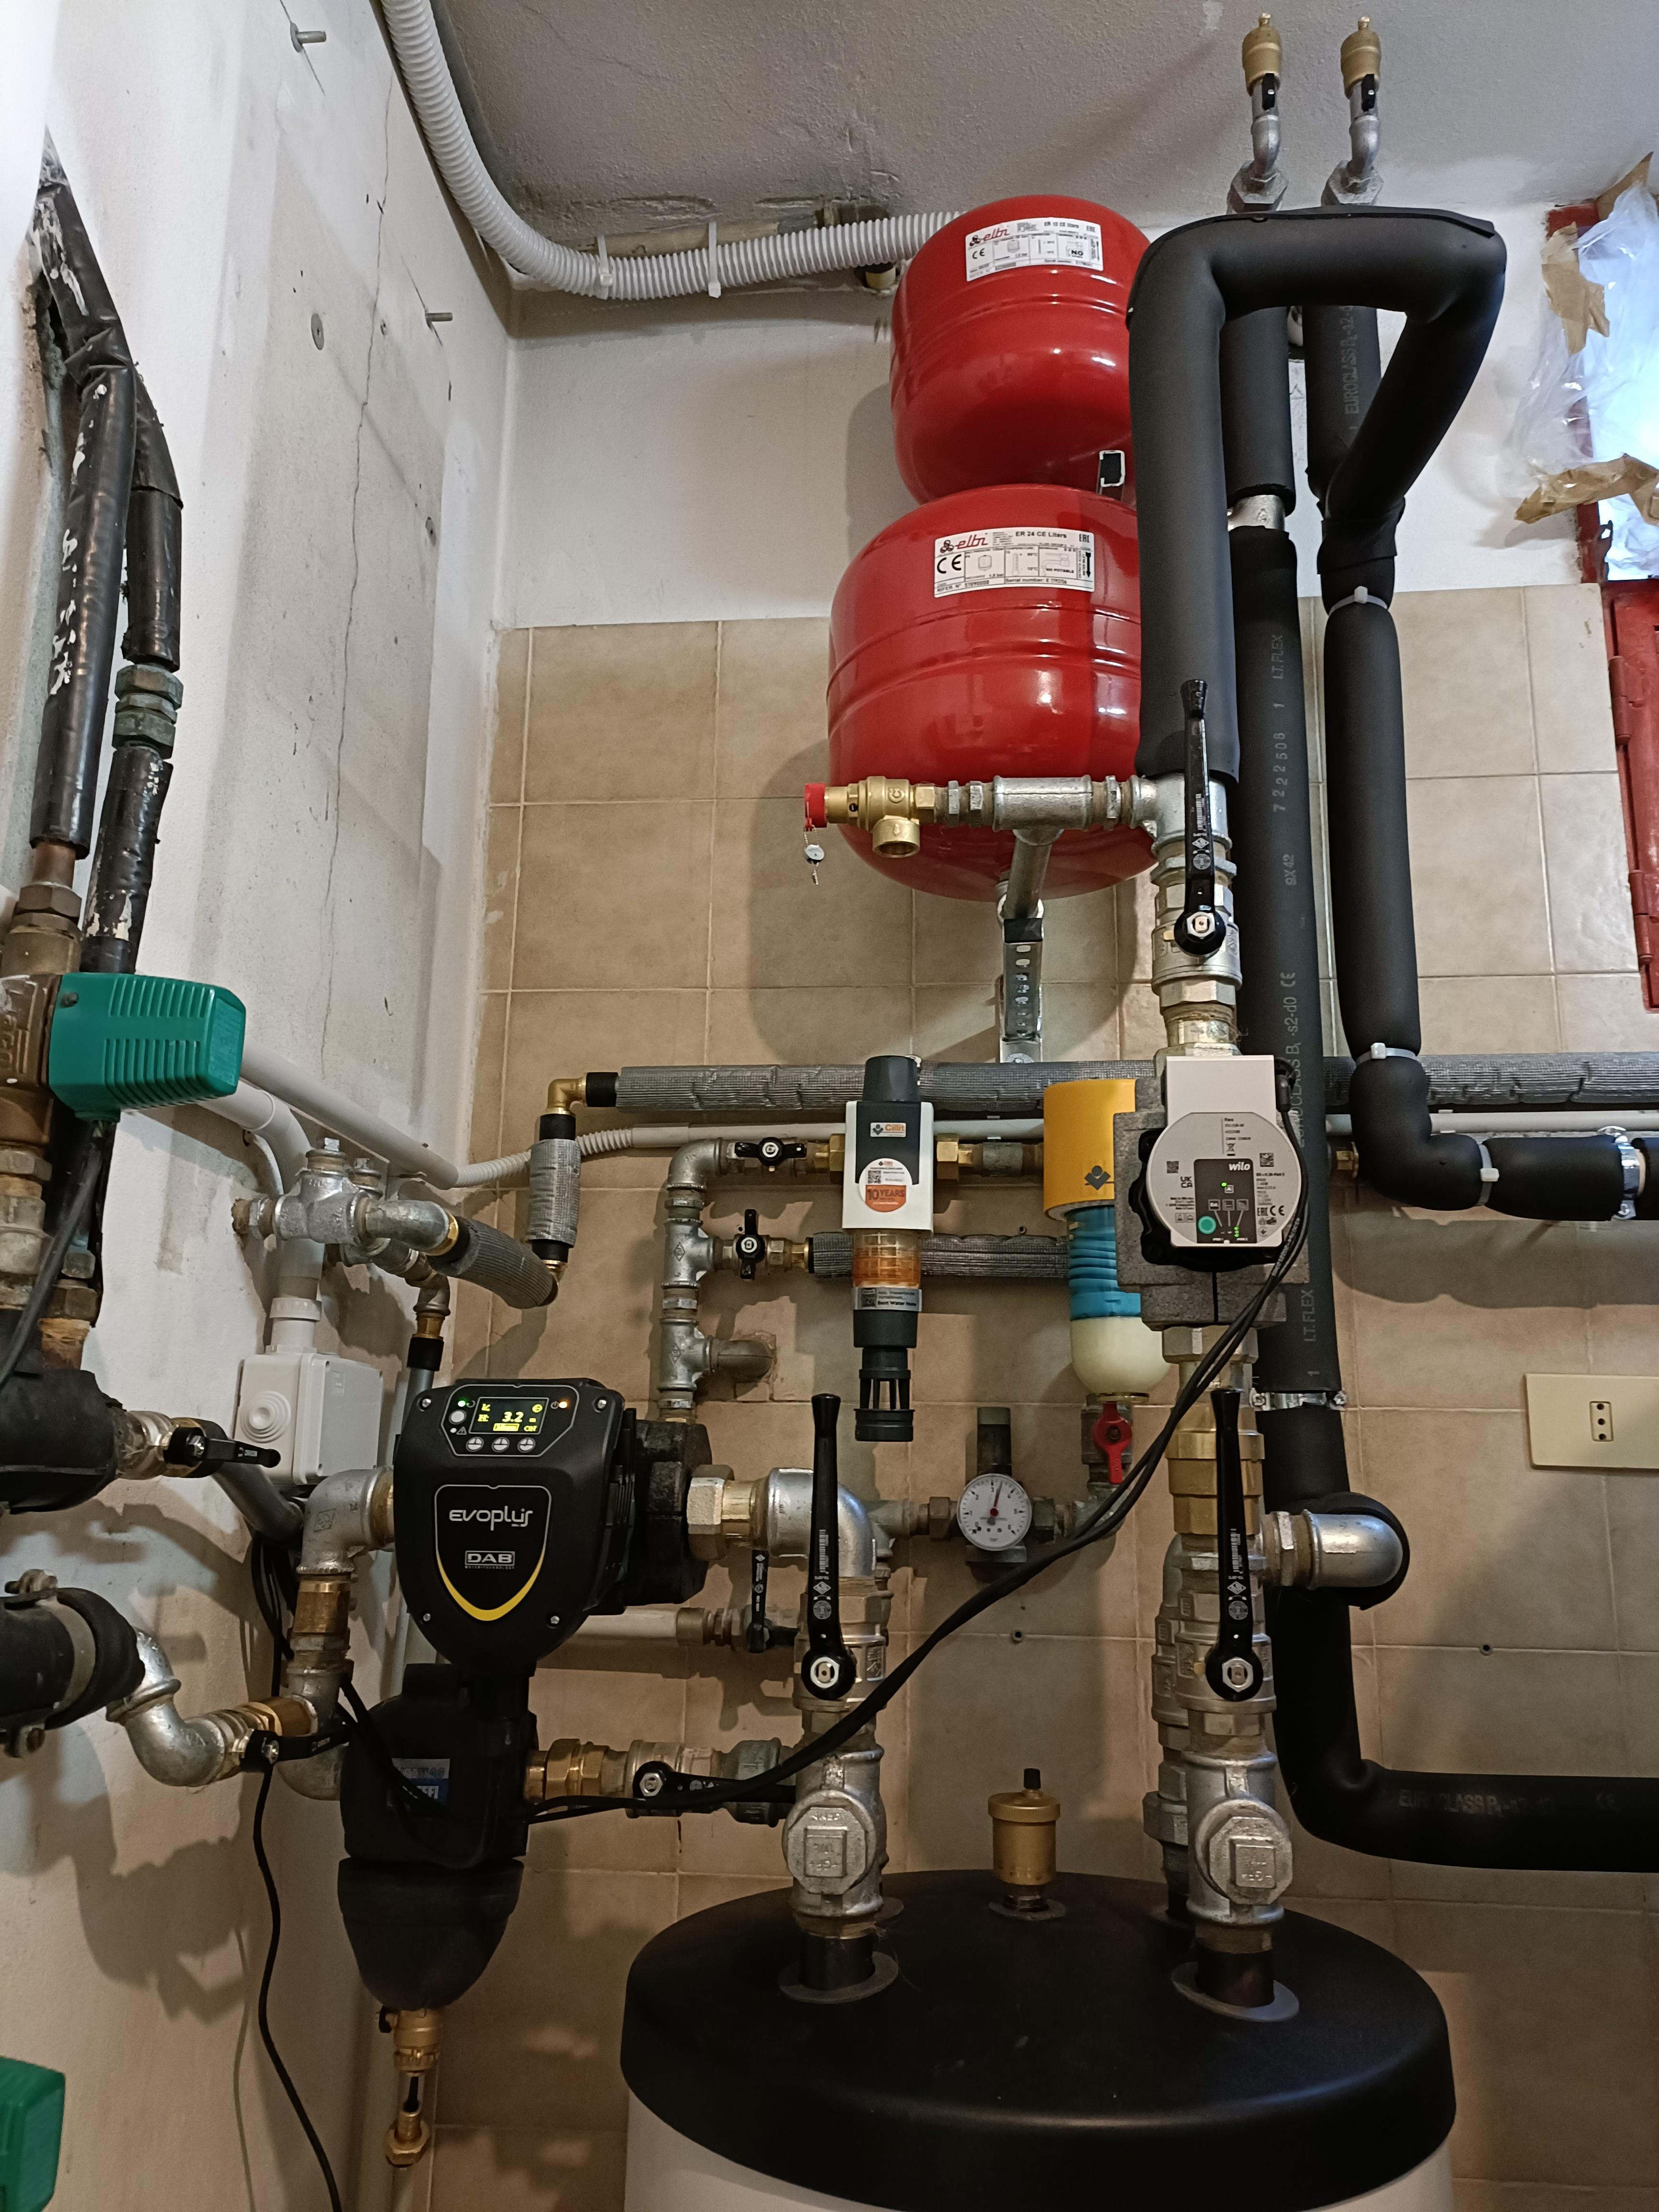 Installazione pompa di calore Stiebel Eltron realizzato da Hydro Fire impianti di Quaglia Marco,  a Monza